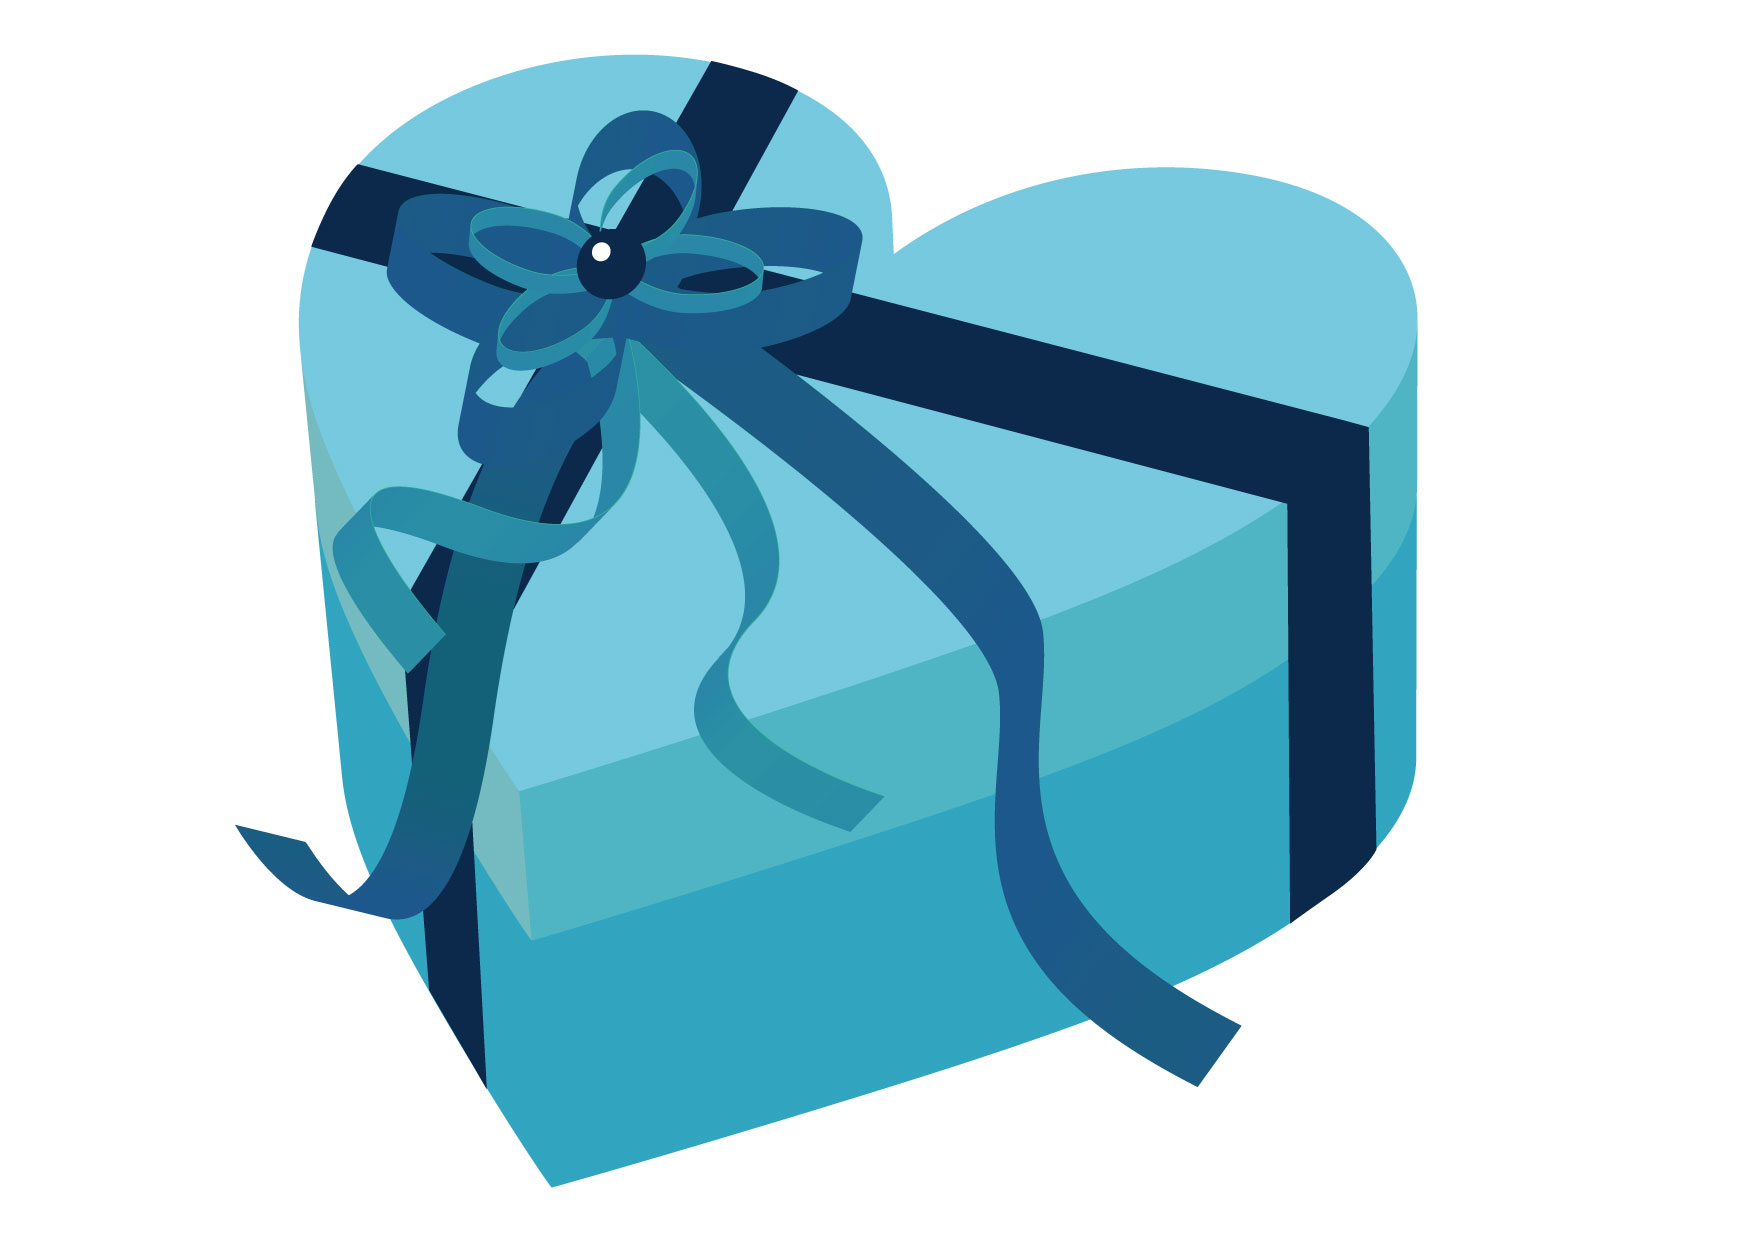 可愛いイラスト無料 バレンタイン ハート ブルー 箱 Free Illustration Valentine Heart Blue Box 公式 イラスト素材サイト イラストダウンロード